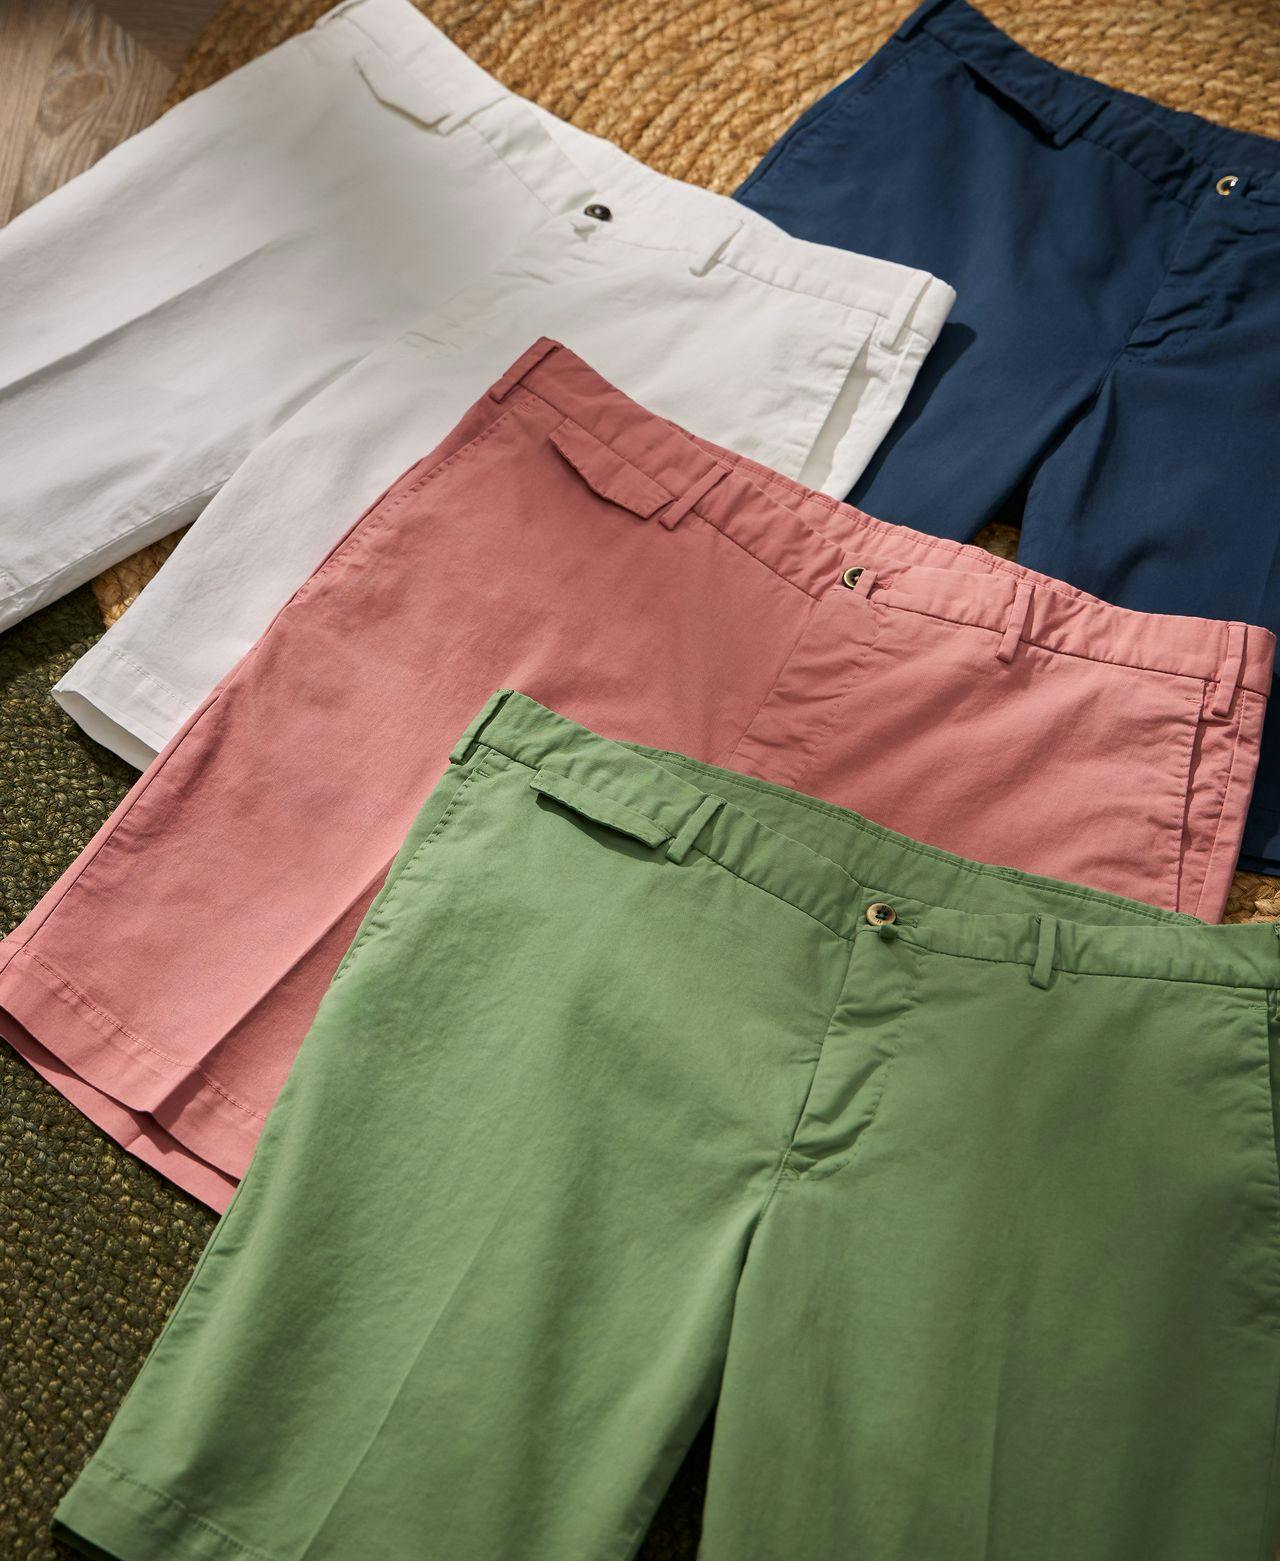 quatre shorts de couleurs différentes affichés sur un tapis